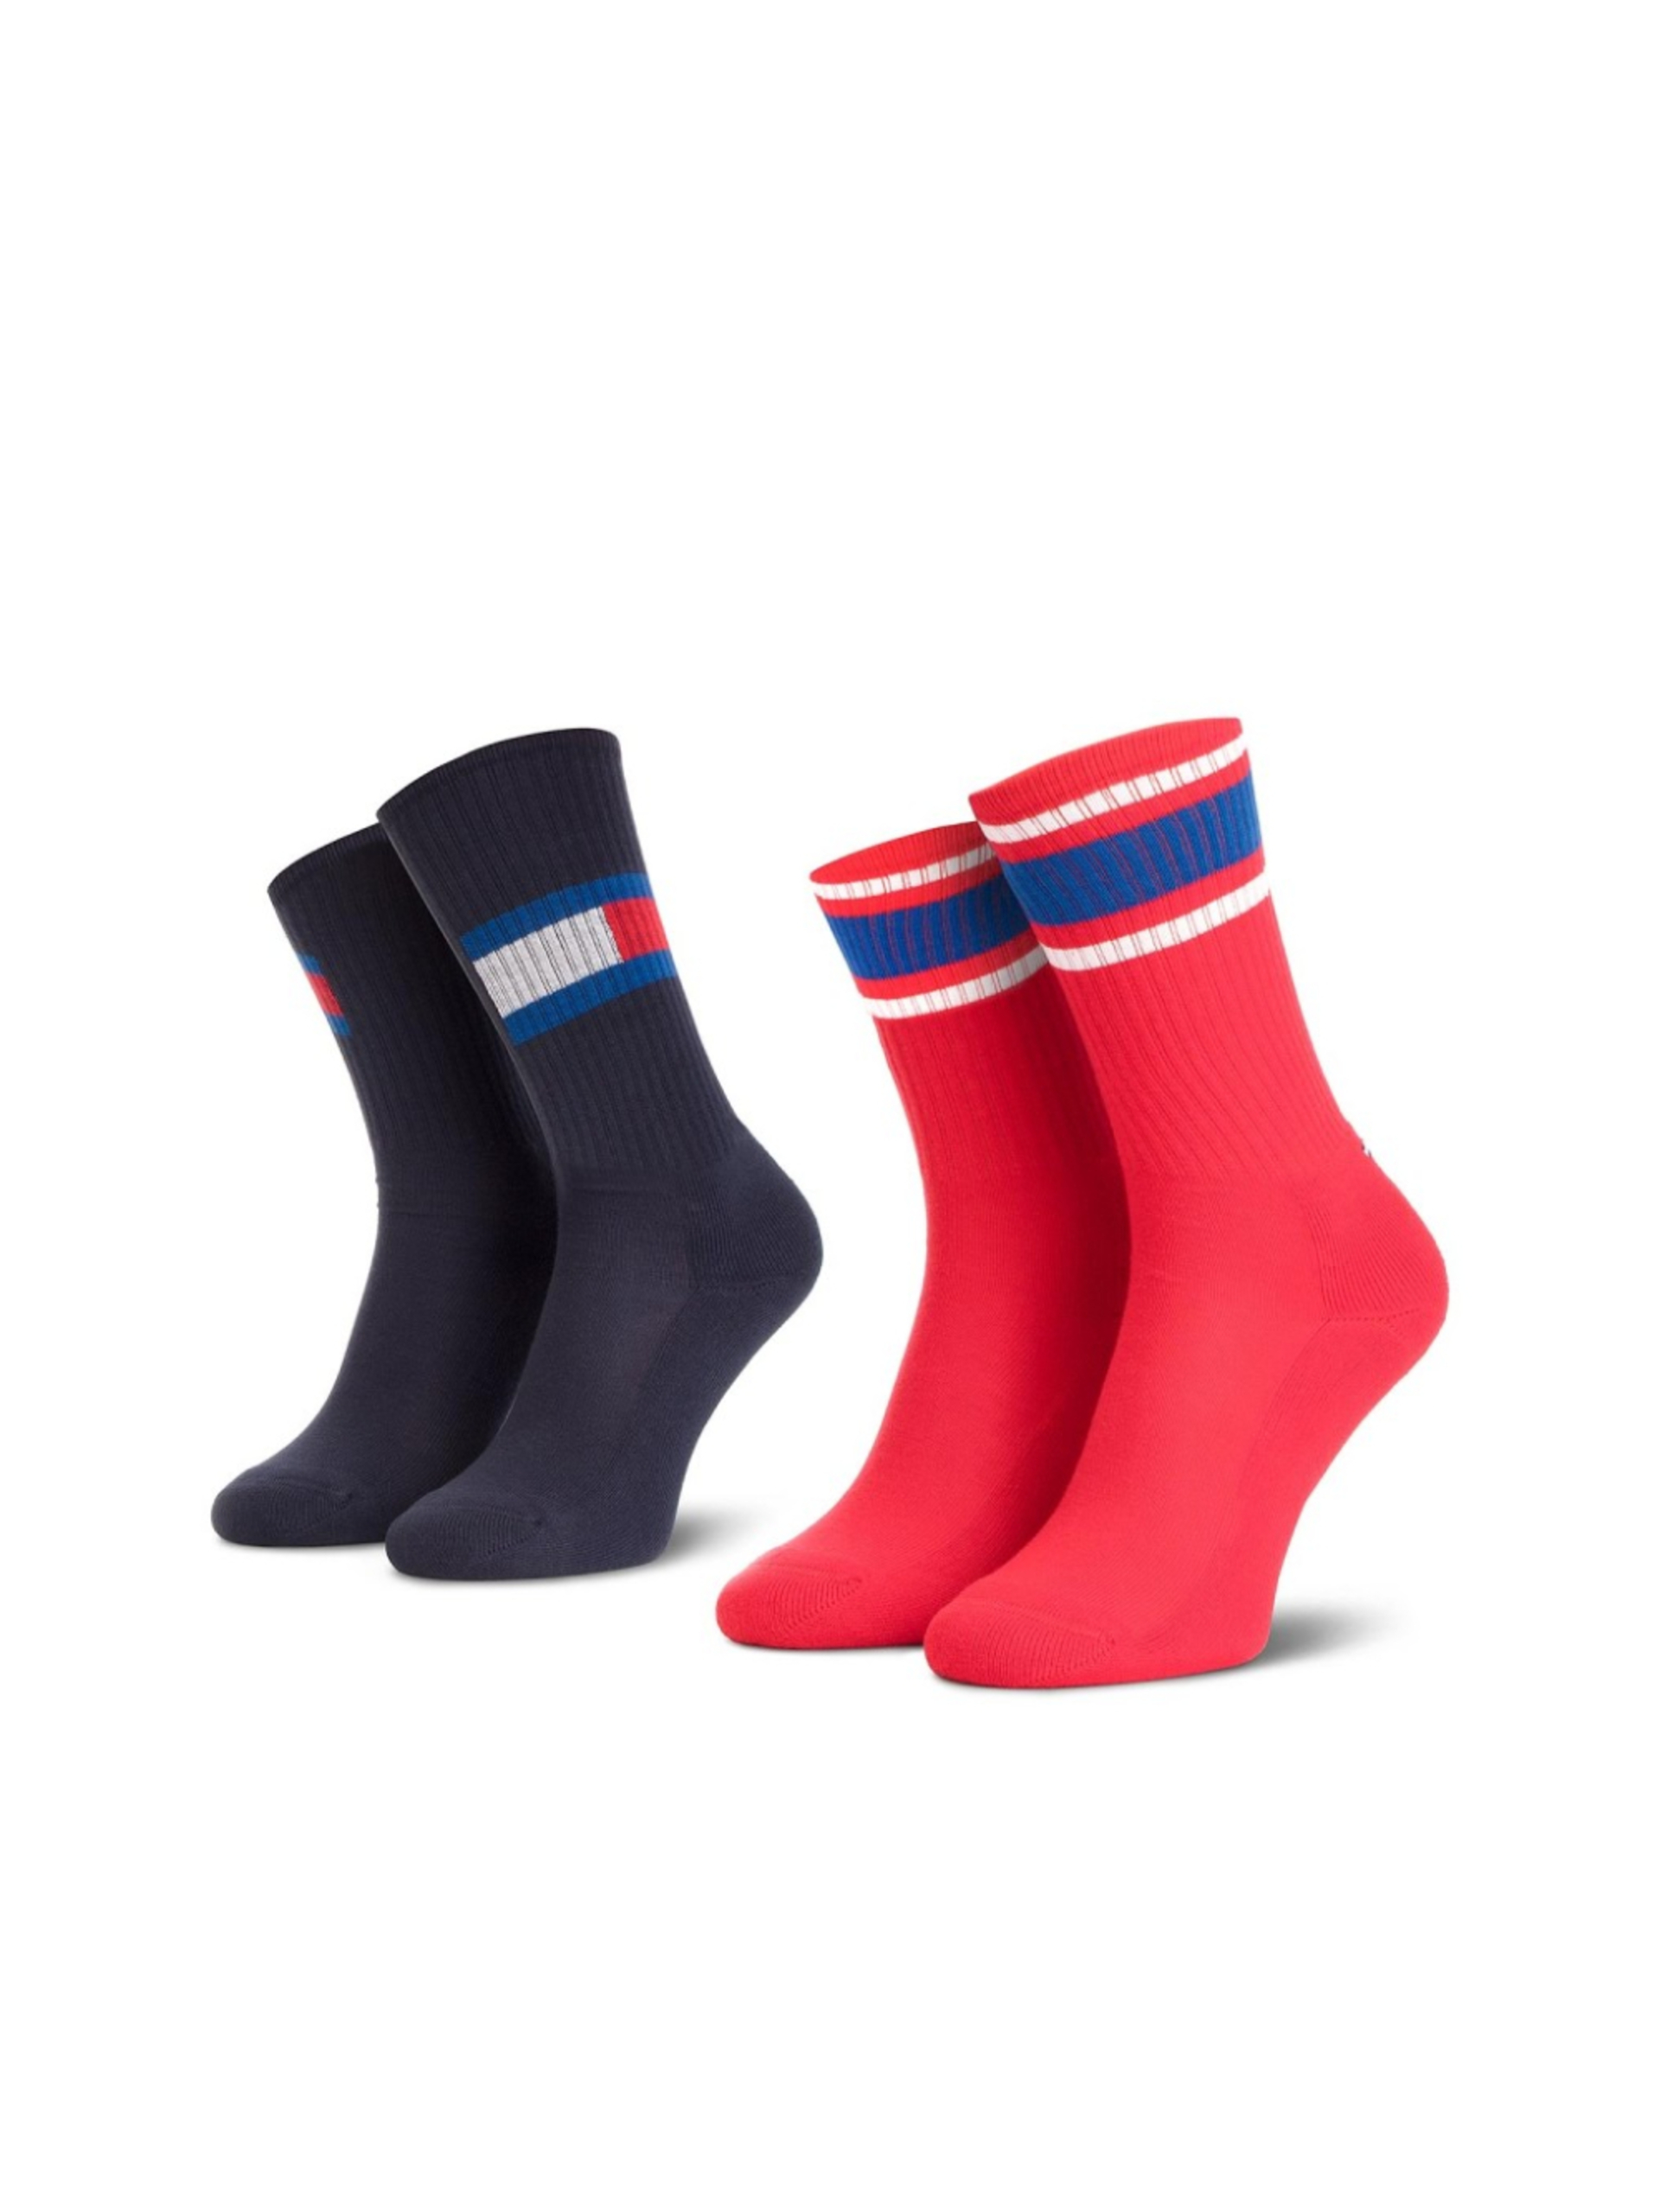 Tommy Hilfiger chlapecké červeno modré ponožky 2 pack - 27 (563)